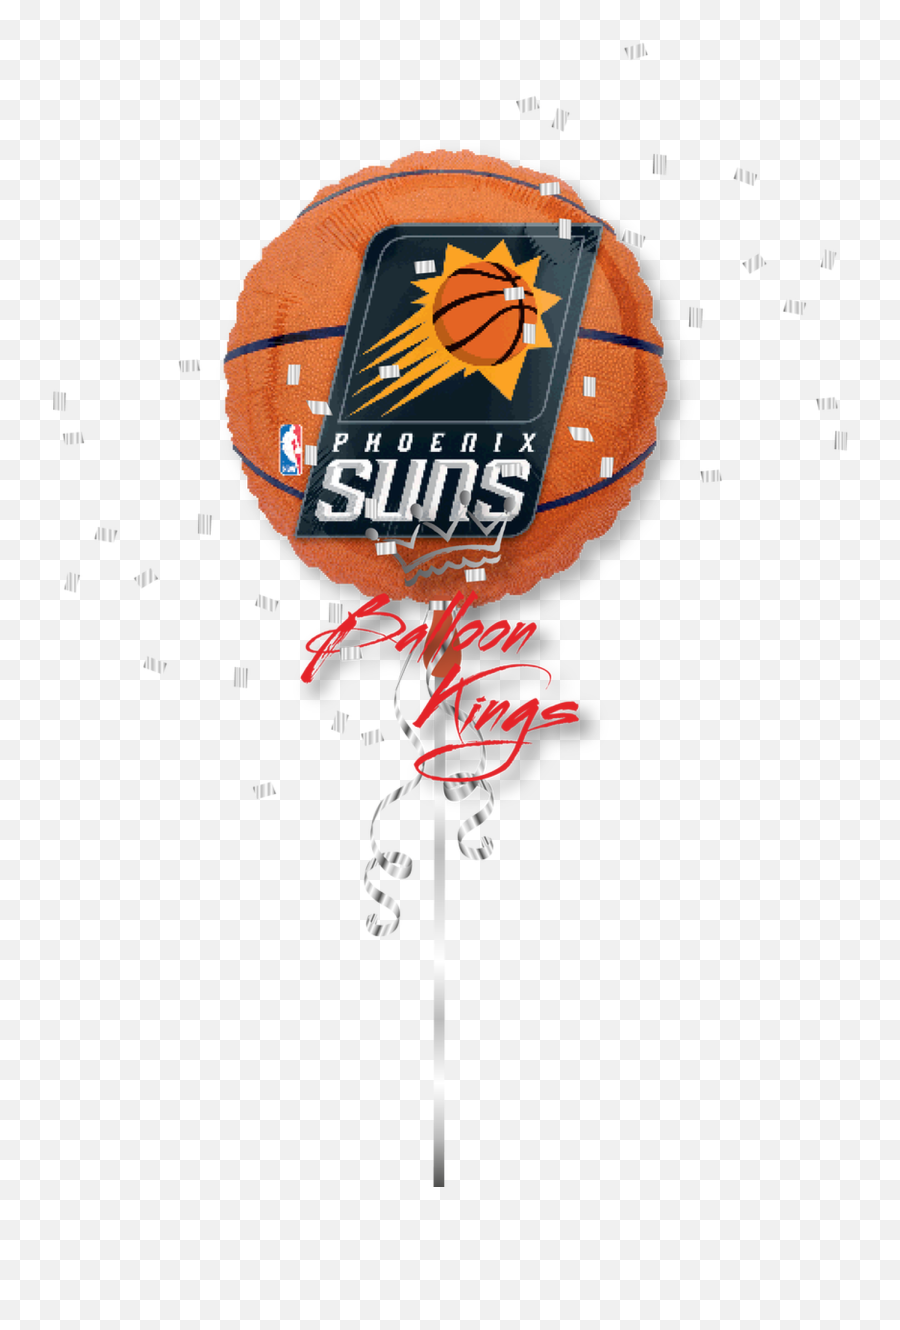 Phoenix Suns - Phoenix Suns Emoji,Phoenix Suns Logo